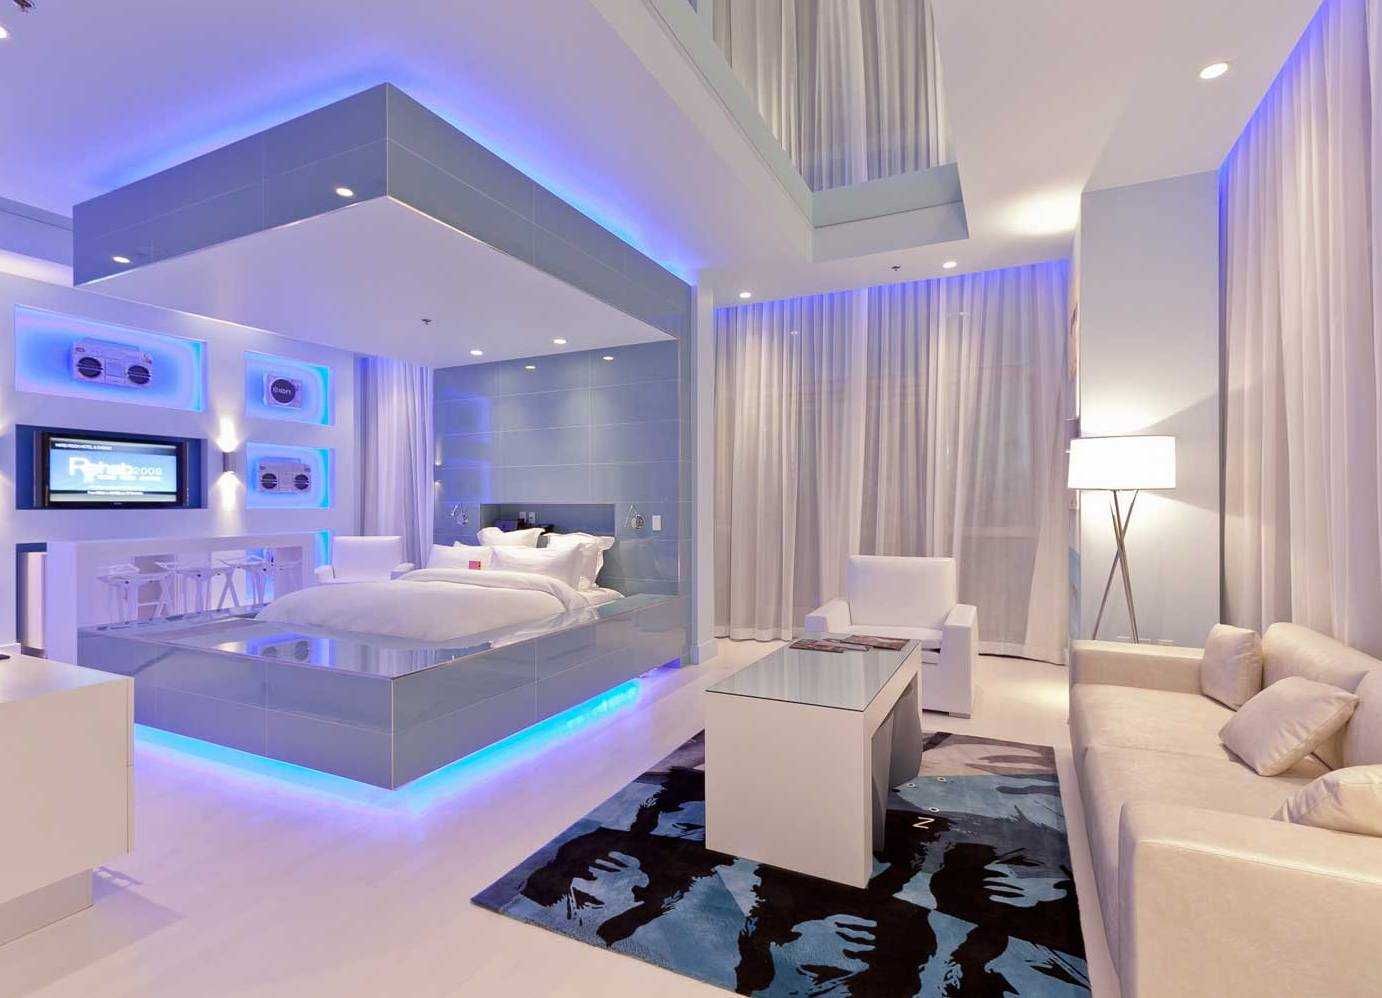 белая гостиная и спальня, синяя подсветка зоны кровати